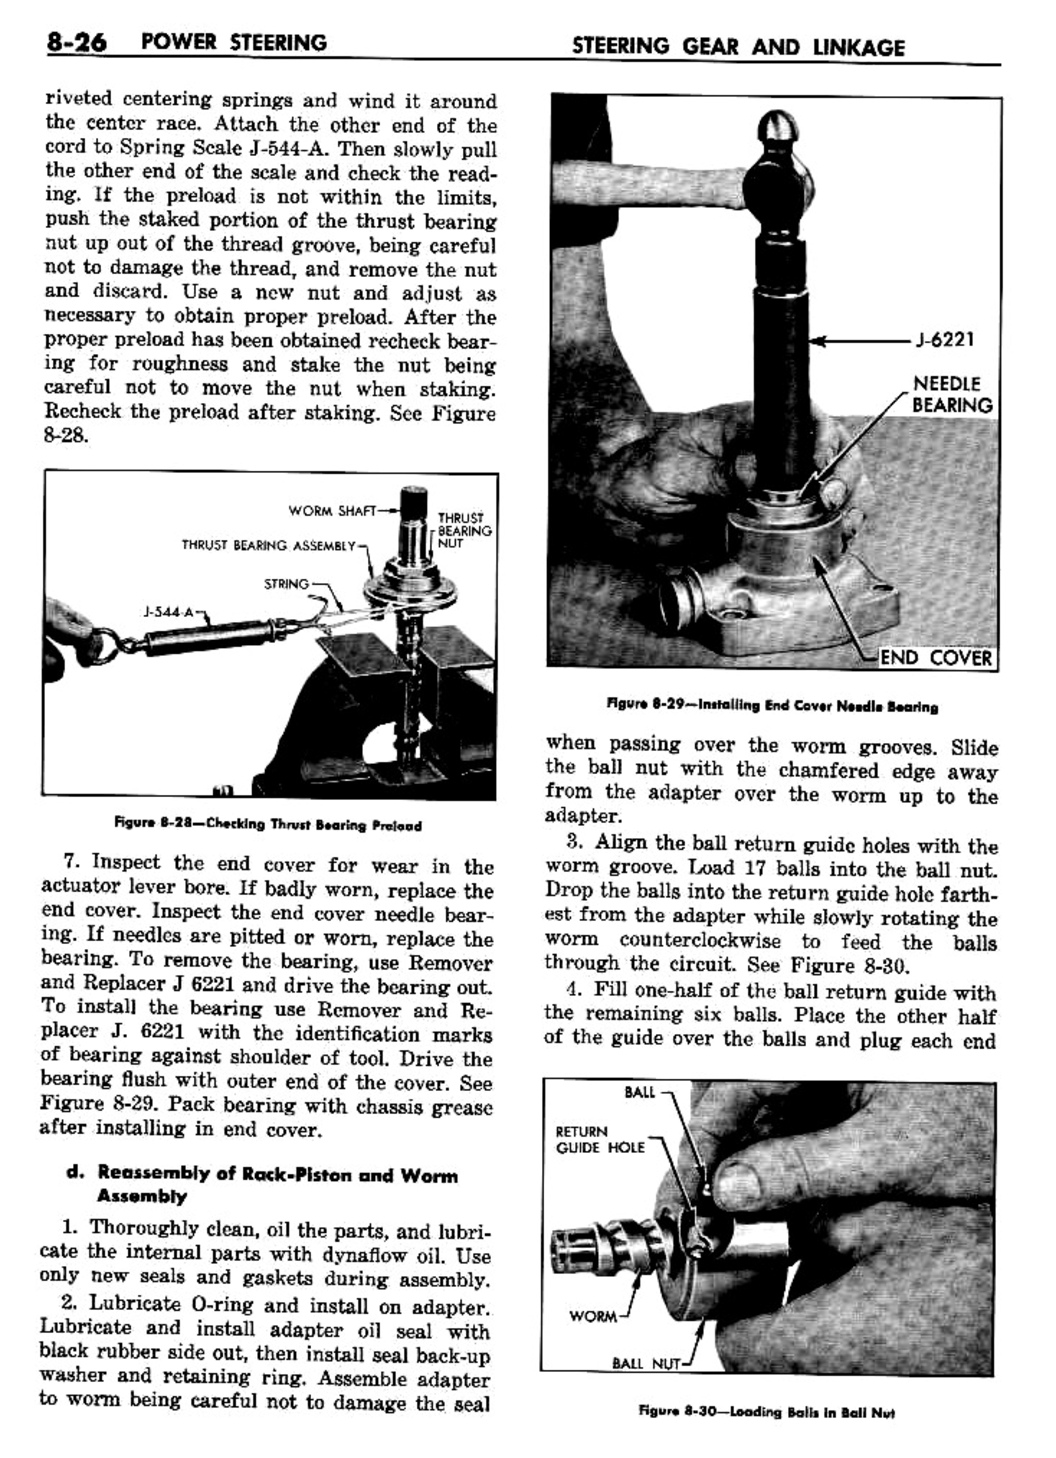 n_09 1957 Buick Shop Manual - Steering-026-026.jpg